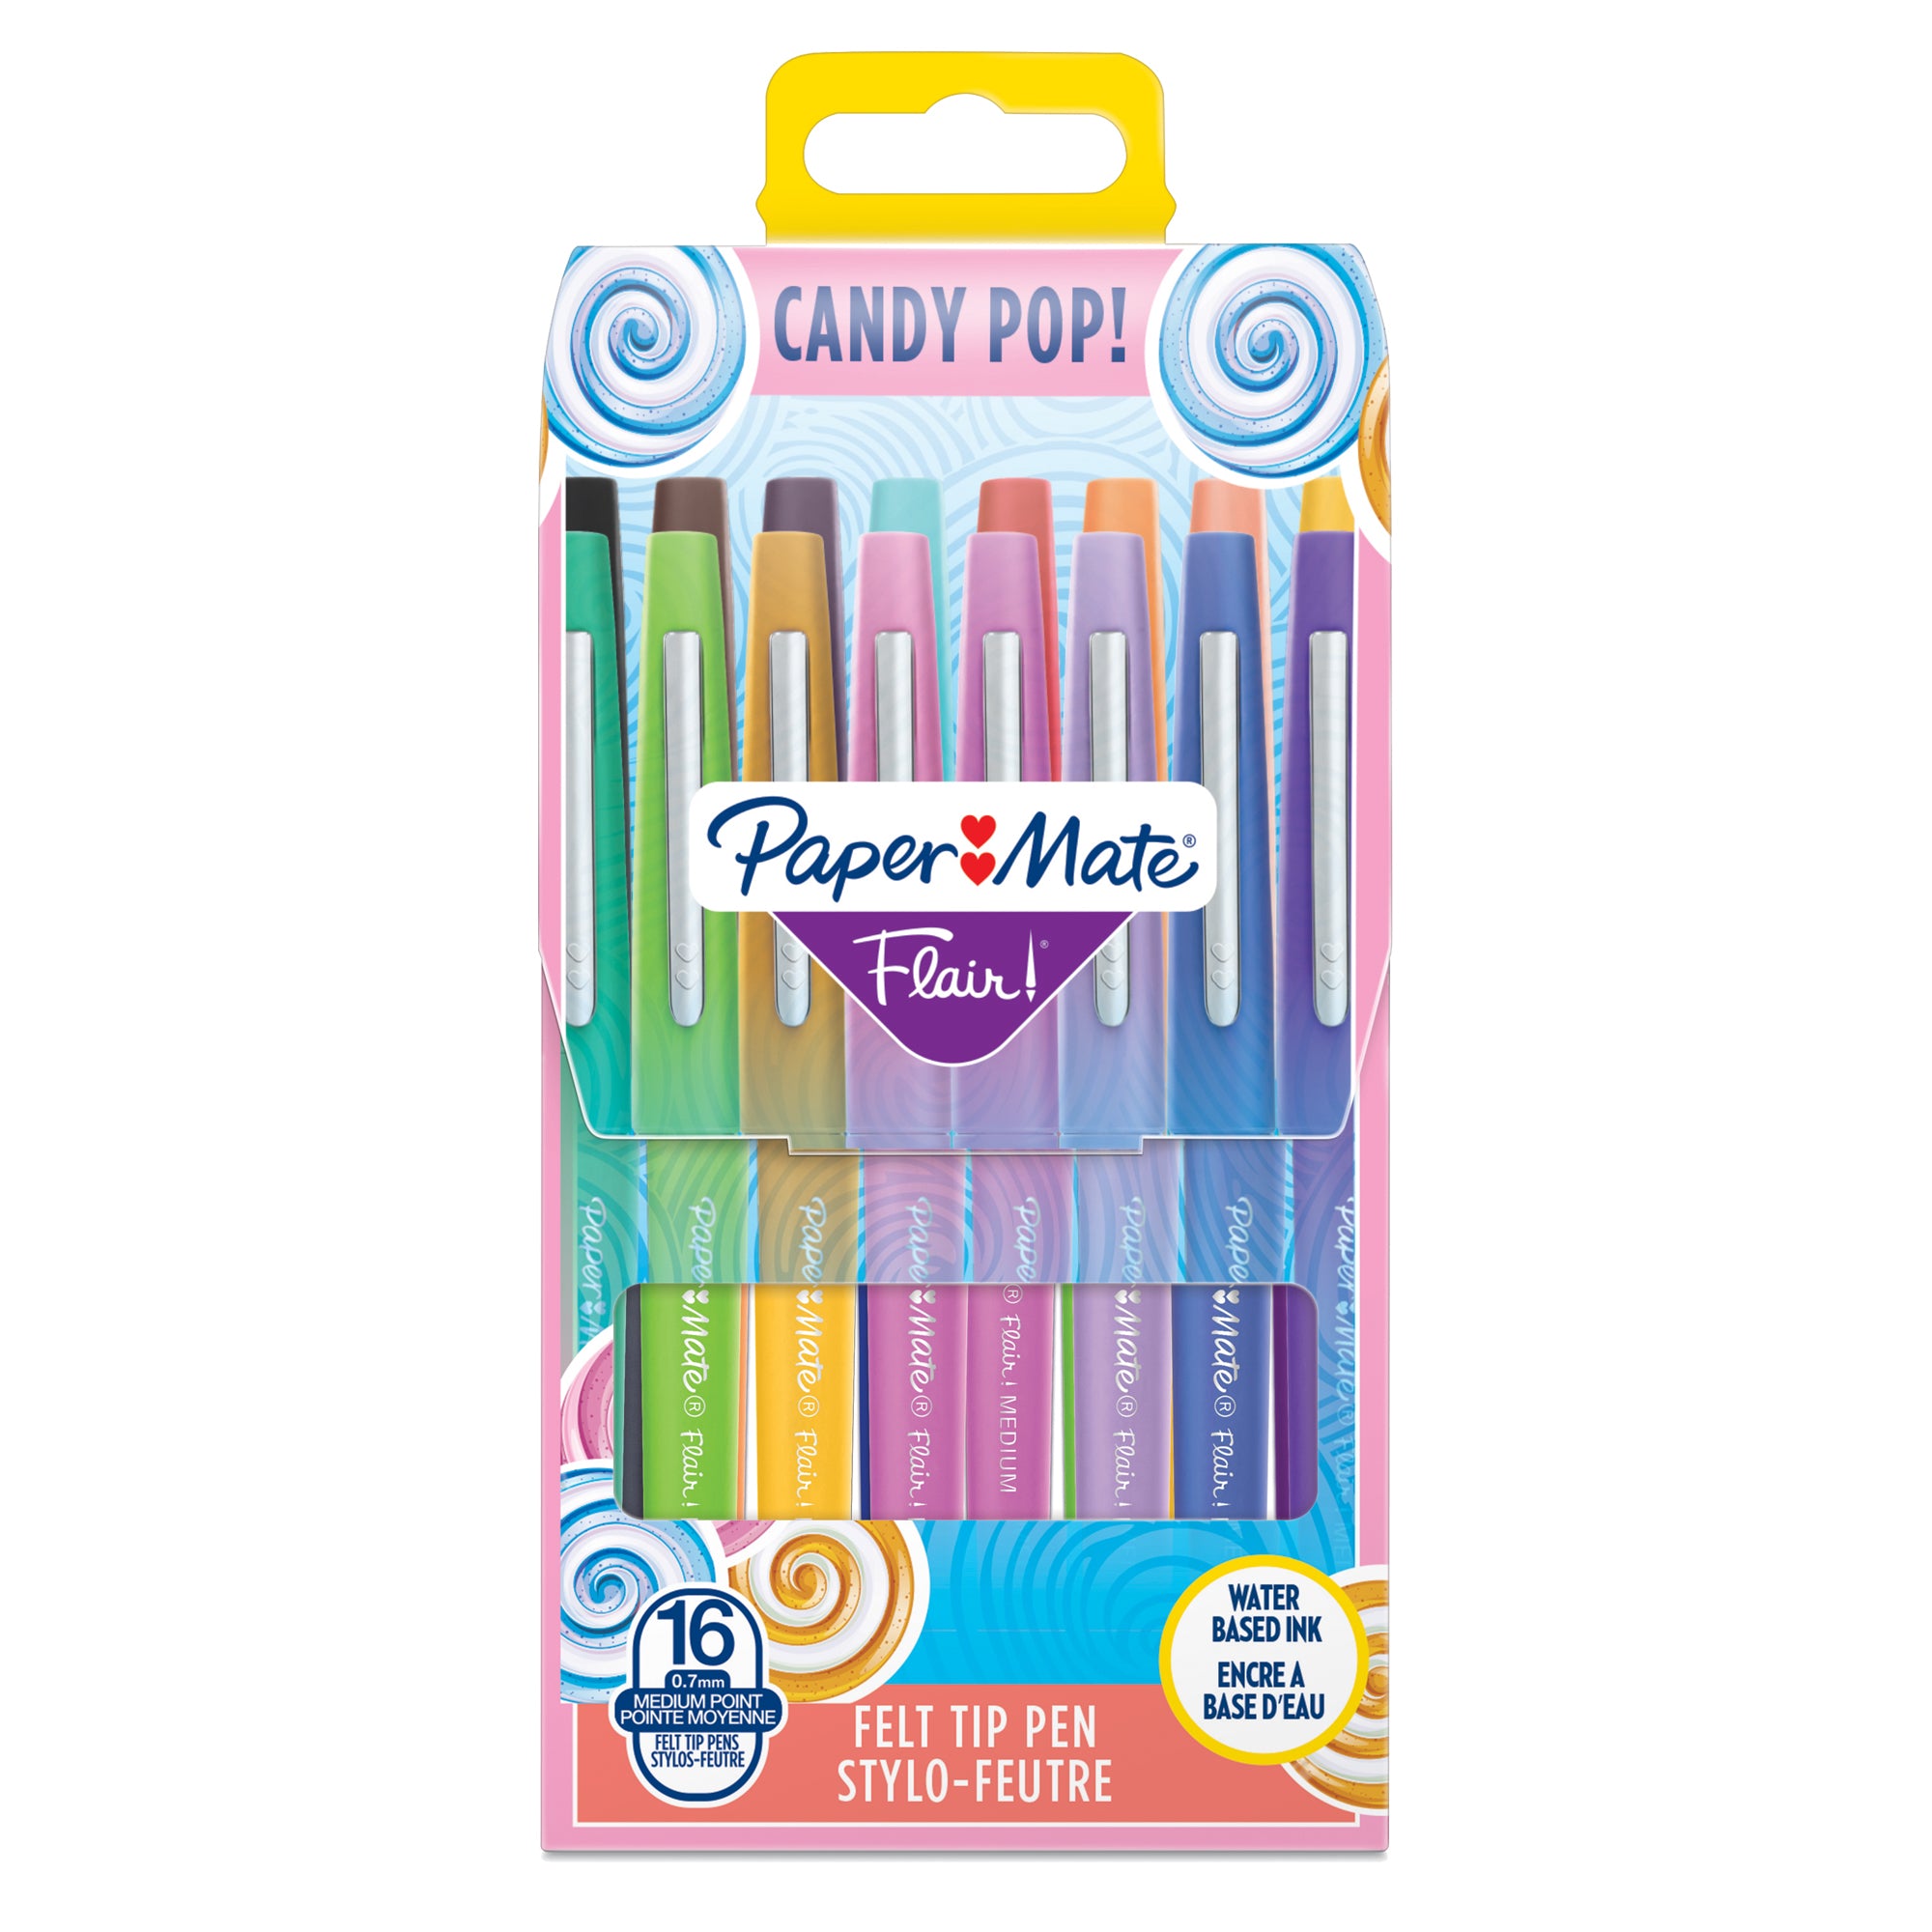 papermate-astuccio-16-colori-candy-pop-pennarello-flair-nylon